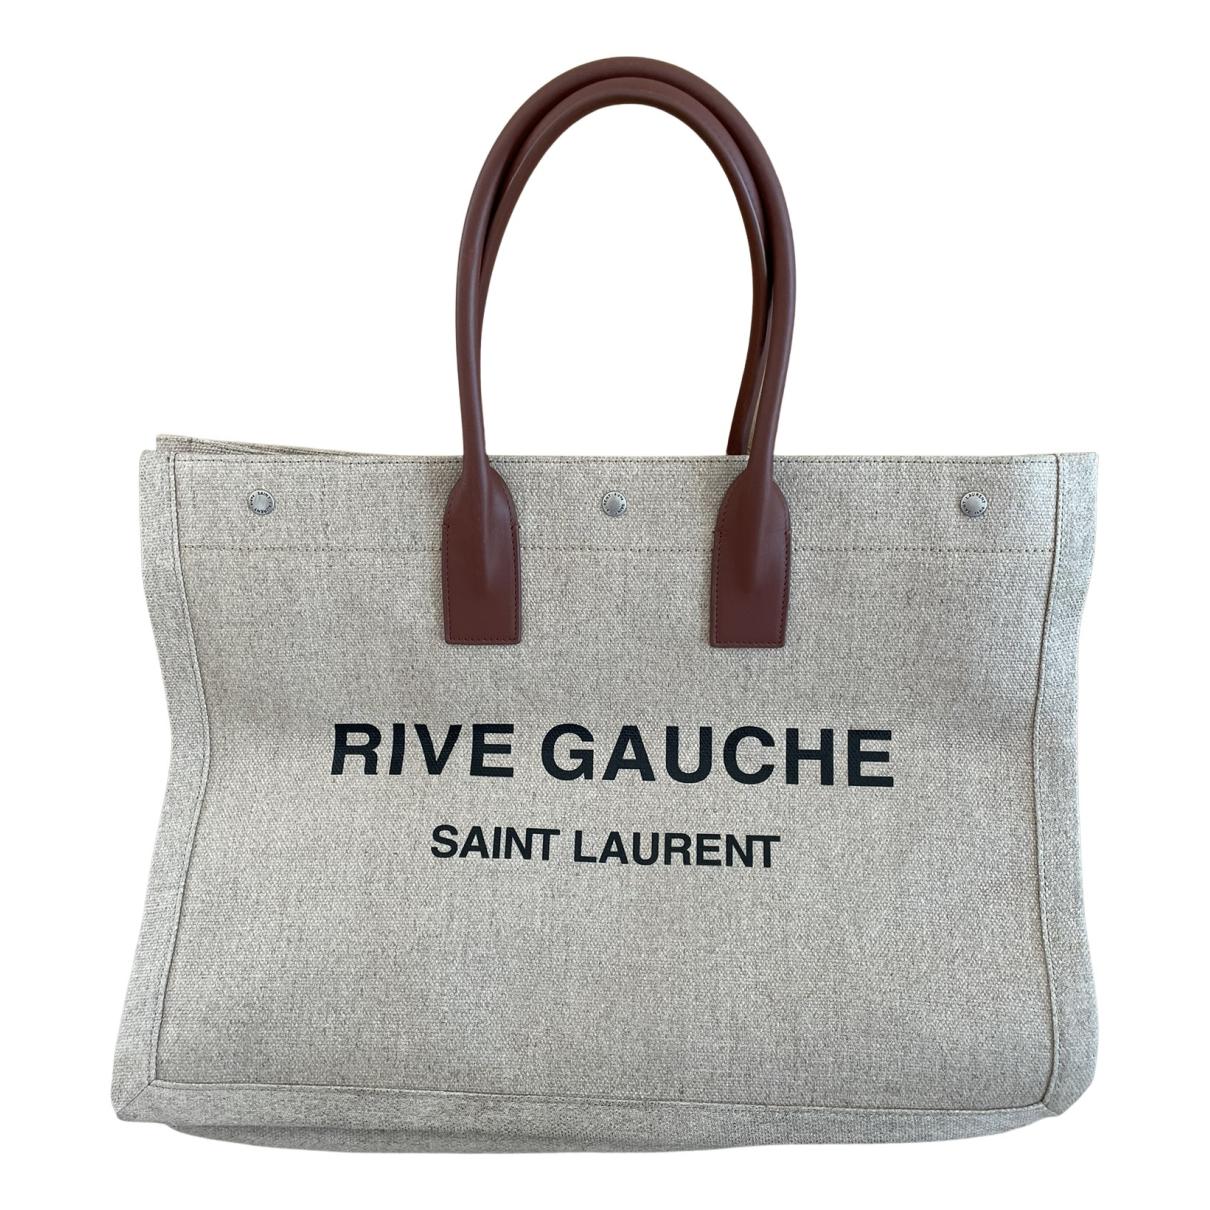 Saint Laurent Rive Gauche Tote Bag in Beige Linen and Cognac